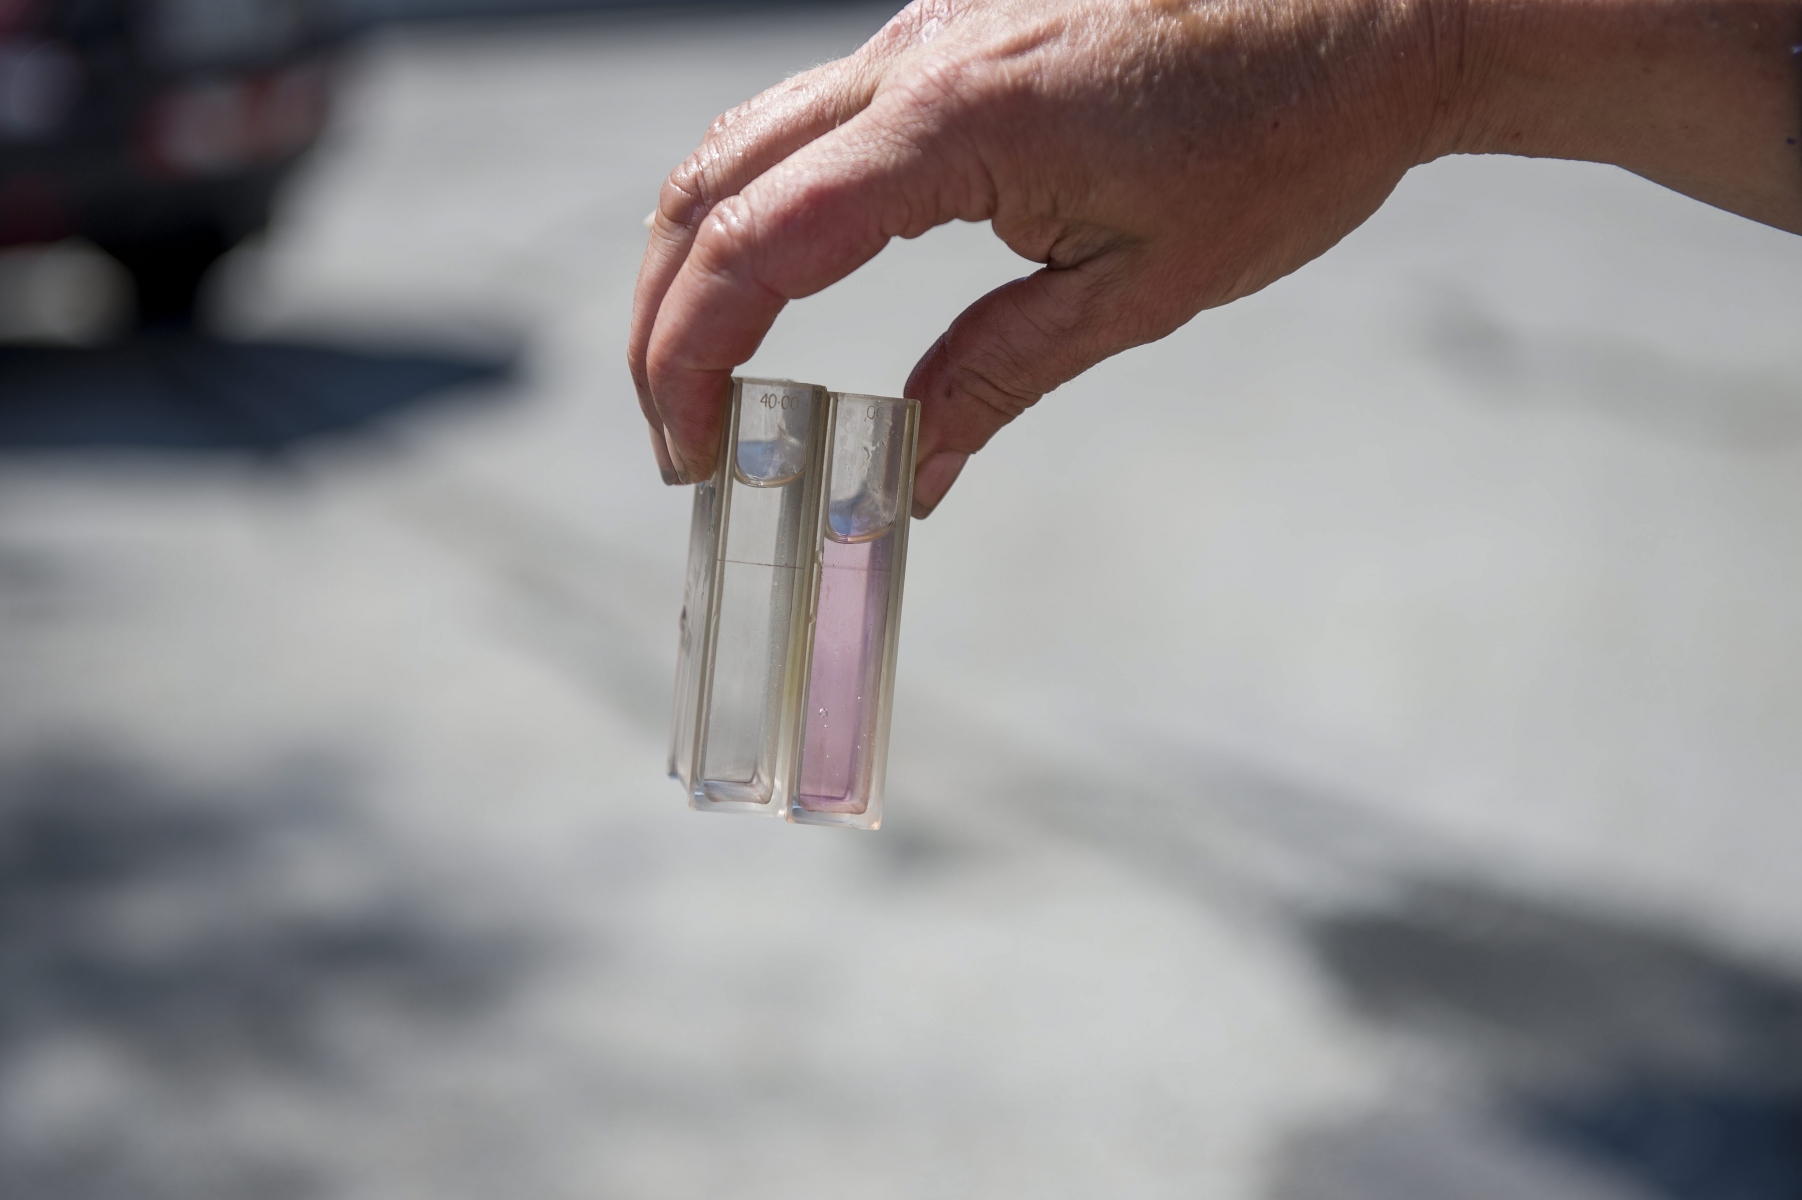 Des prélèvements seront désormais imposés au quotidien à tous les fournisseurs d'eau du canton.

La Brevine, le 03.08.2015

Photo : Lucas Vuitel